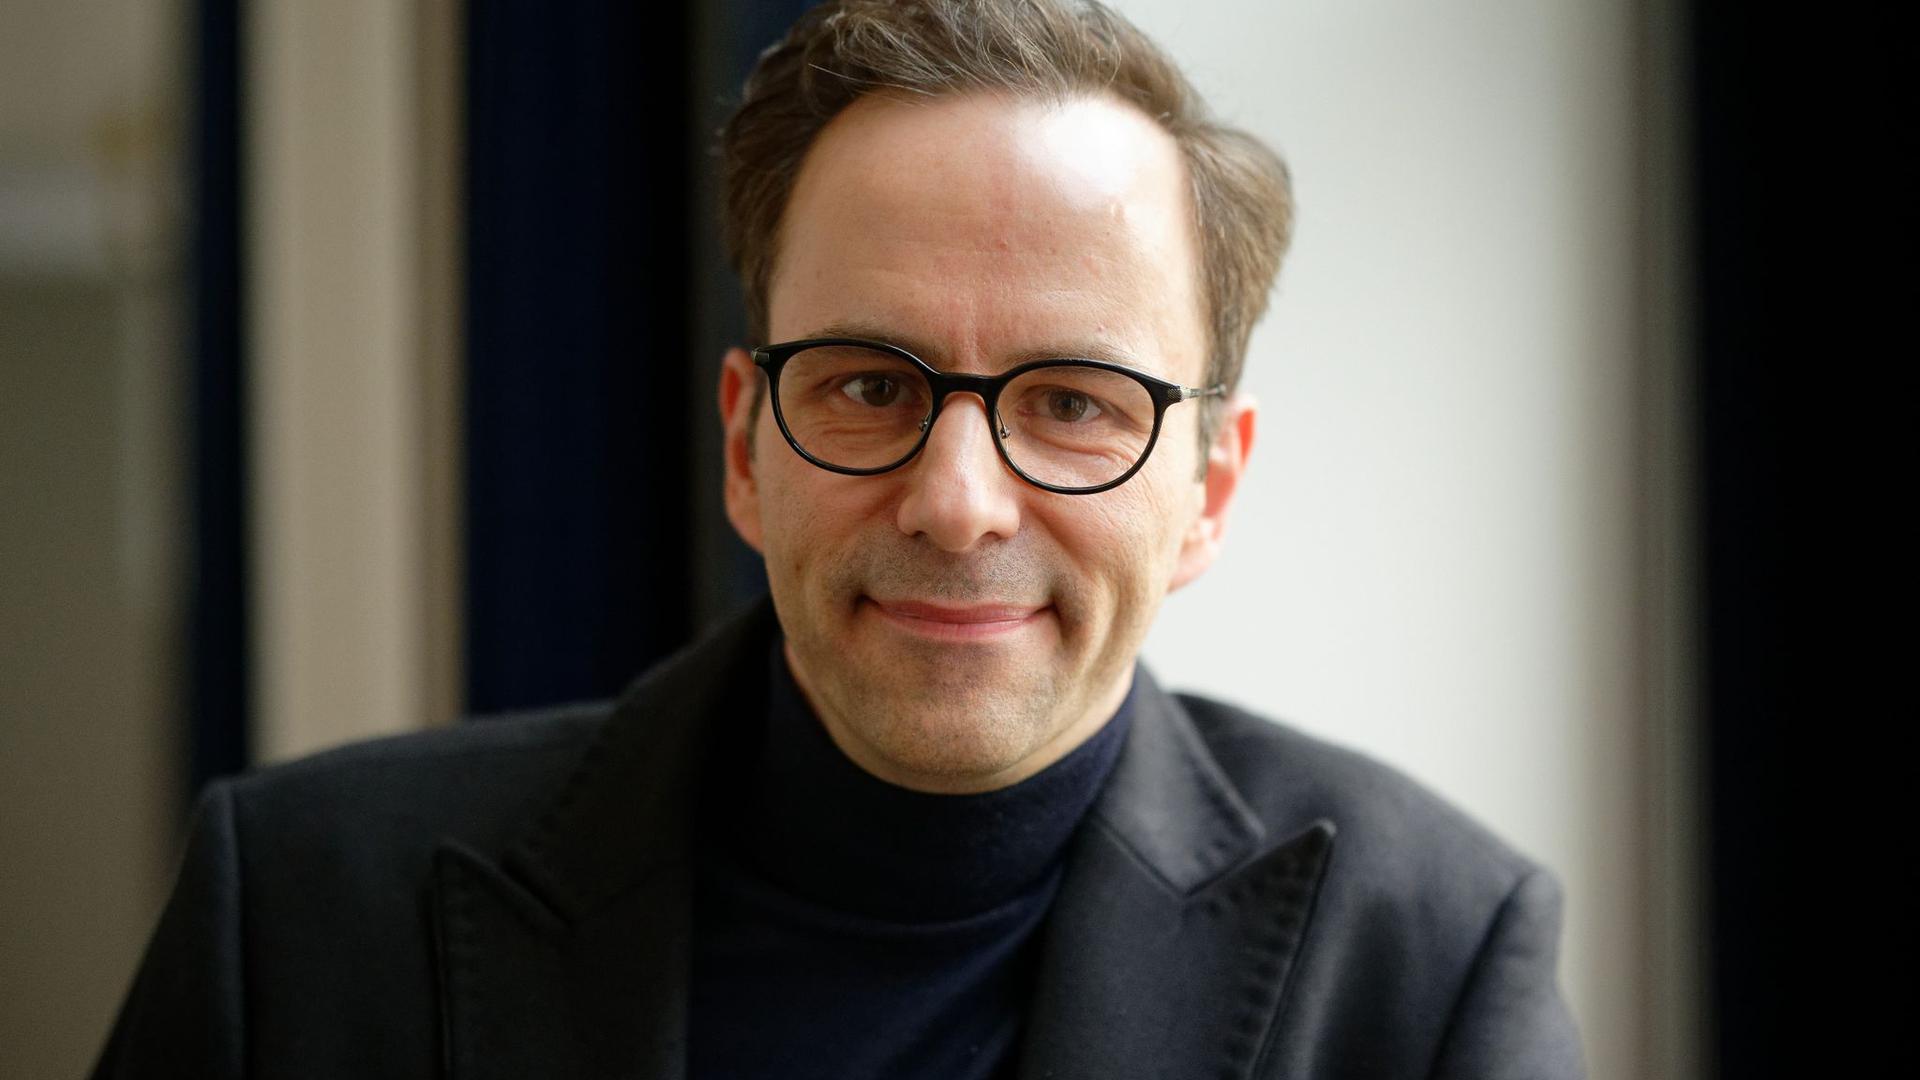 Kurt Krömer, Berliner Humorist und Schauspieler, bei einer Pressekonferenz zur Bekanntgabe der Grimme-Preise 2020. (Archivbild)